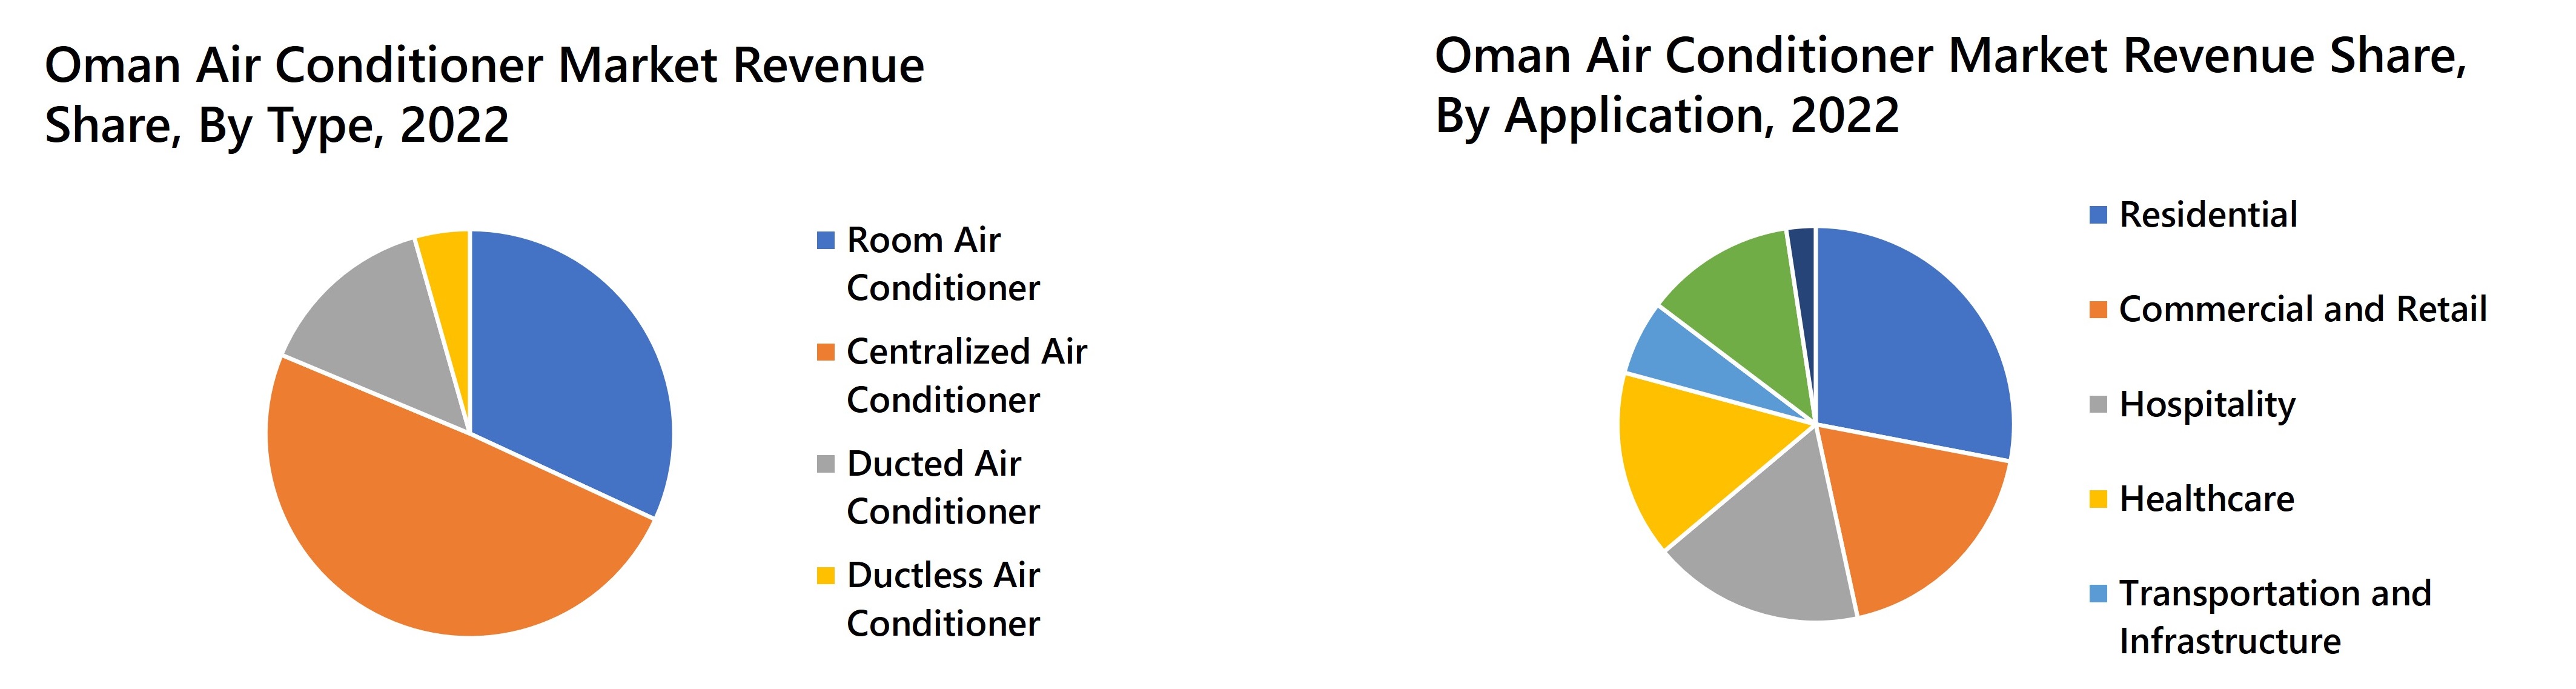 Oman Air Conditioner Market Revenue Share